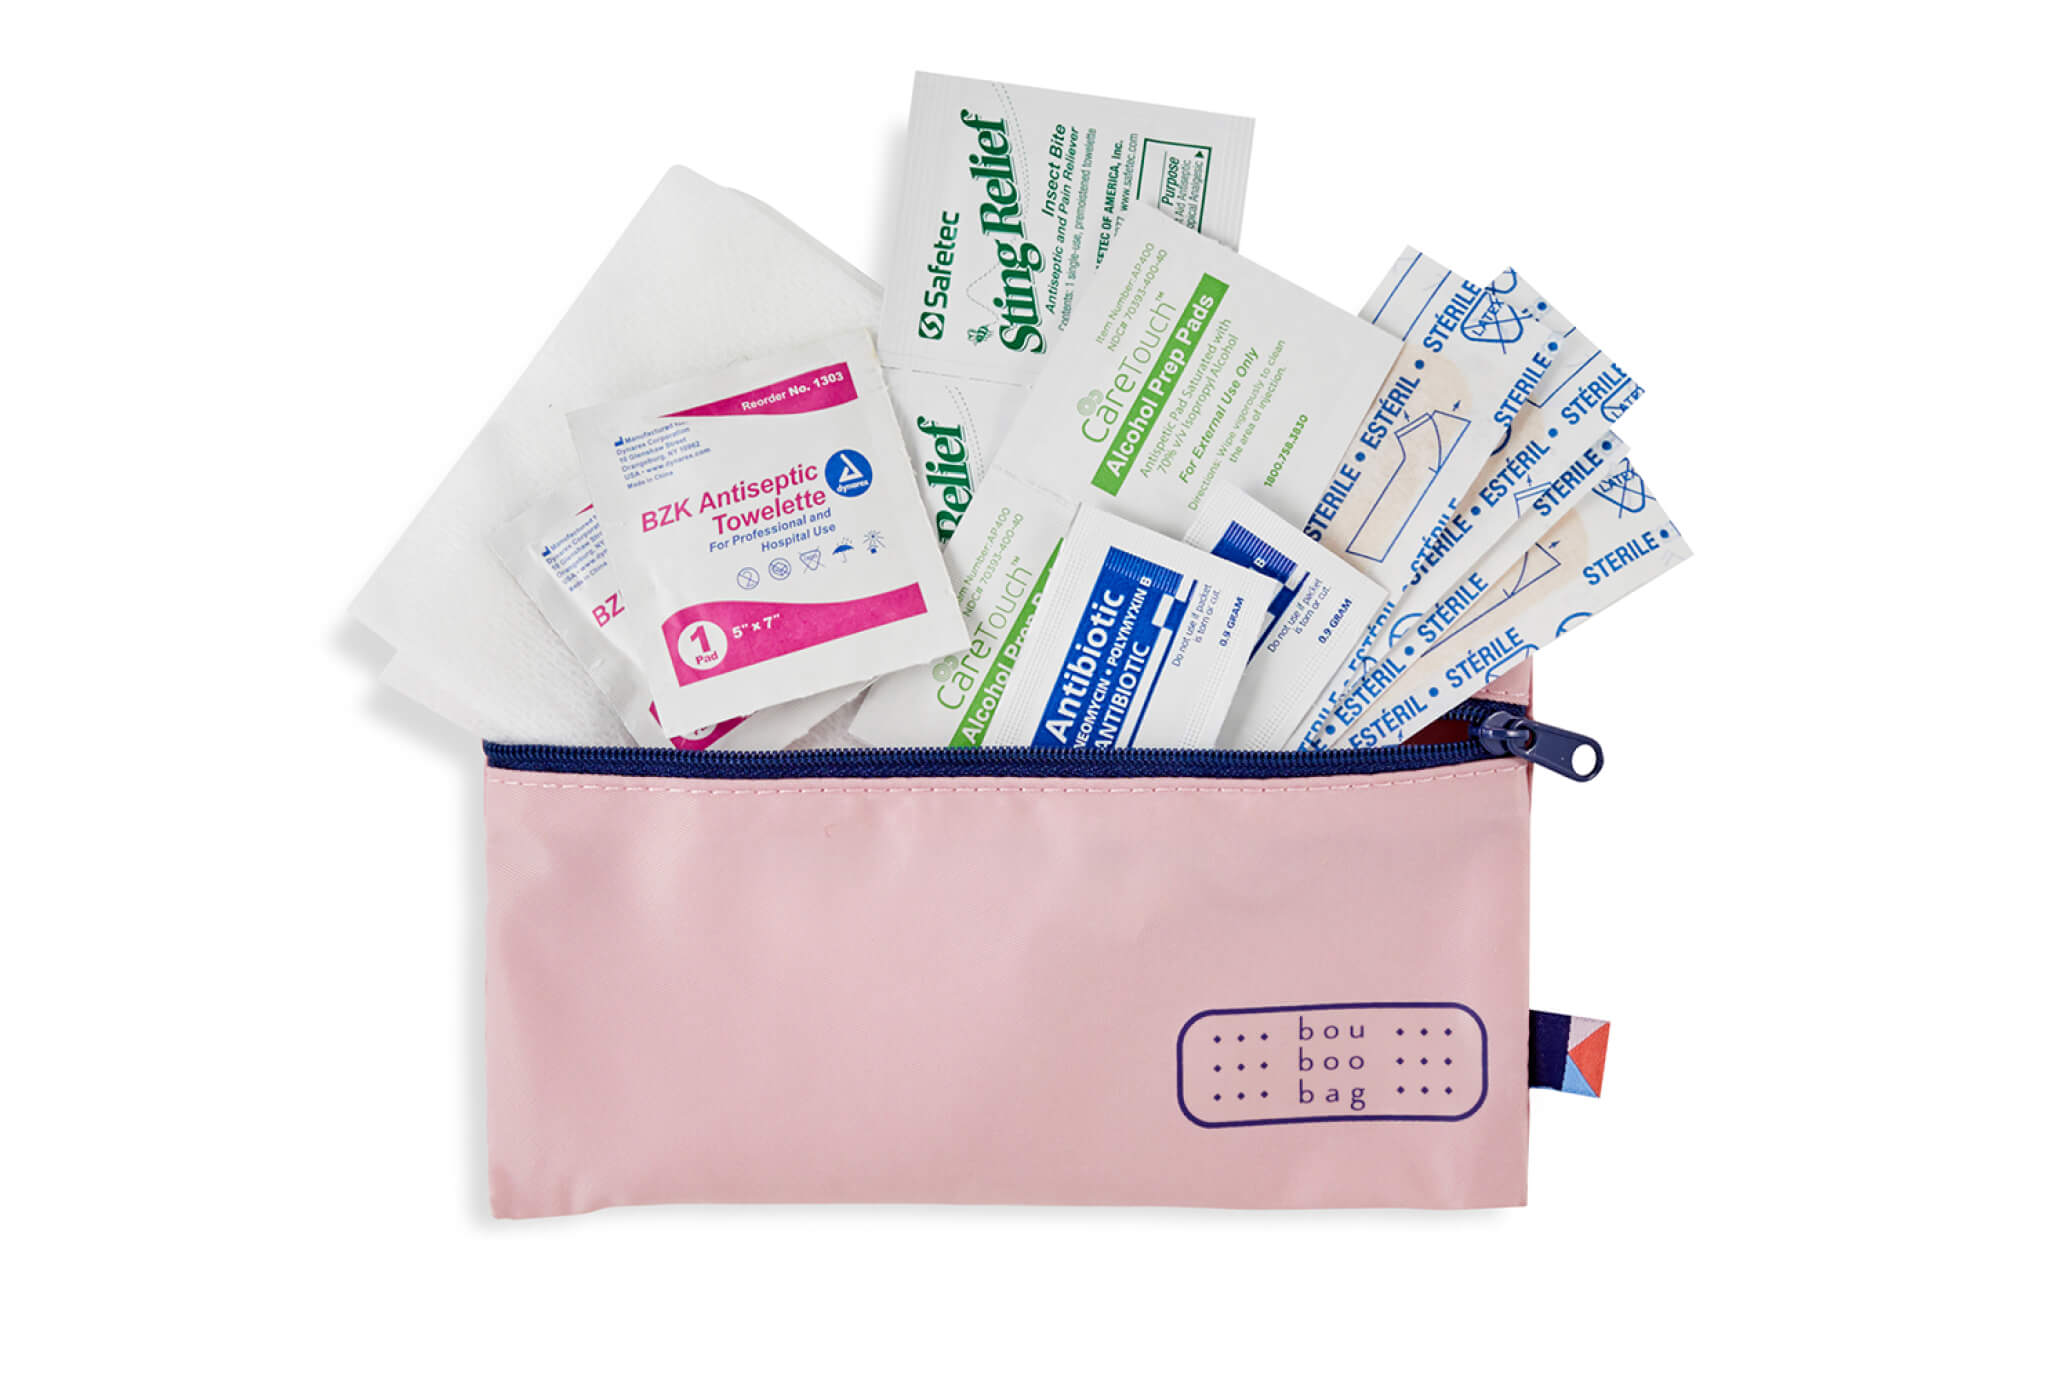 Kibou bou-boo bag first aid kit